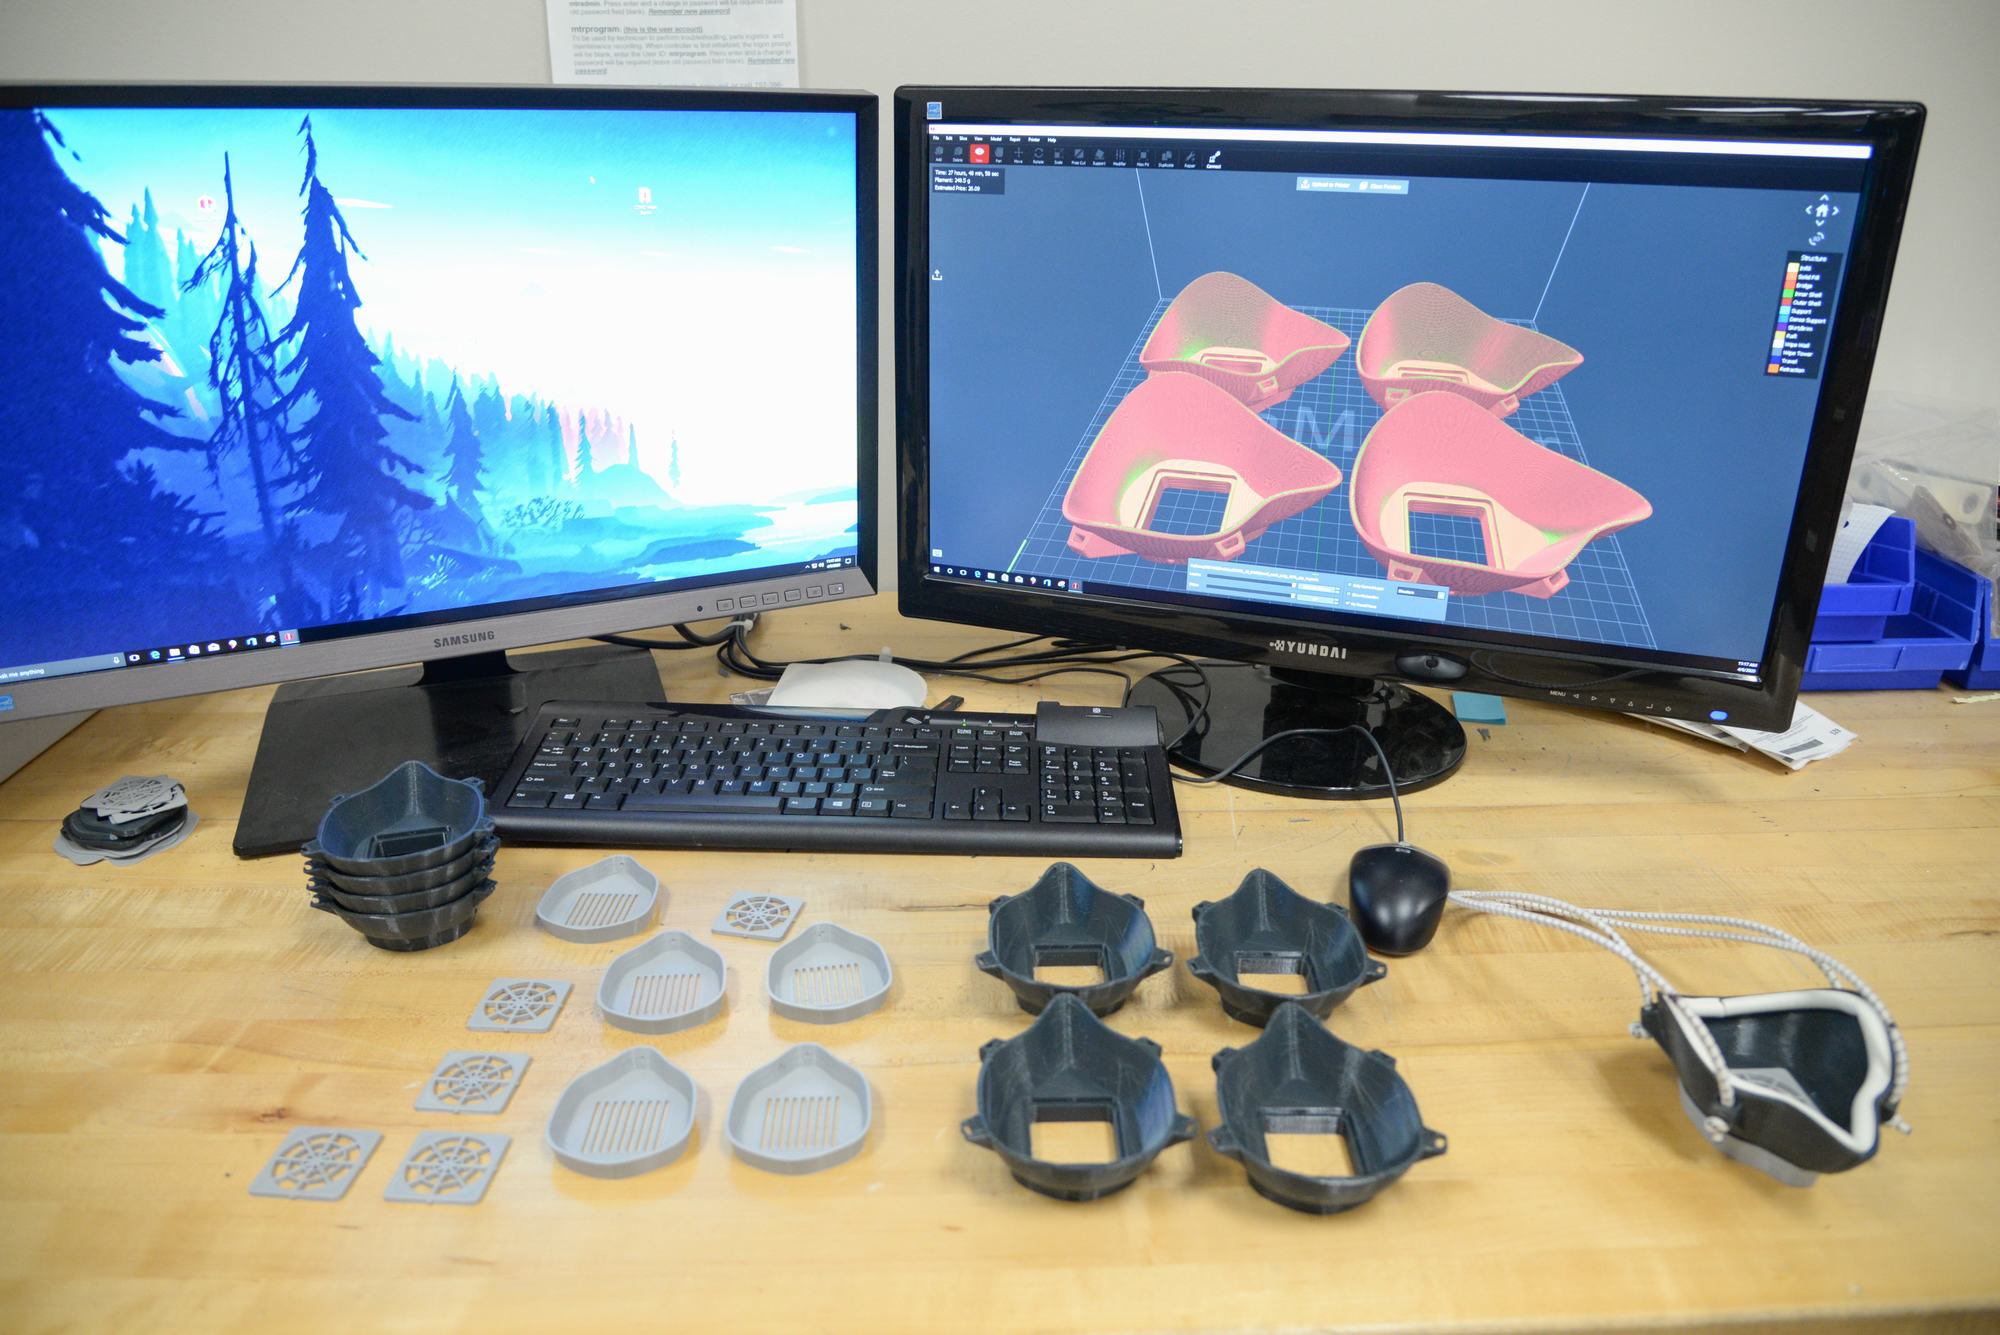 美空军部队使用3D打印技术自制口罩